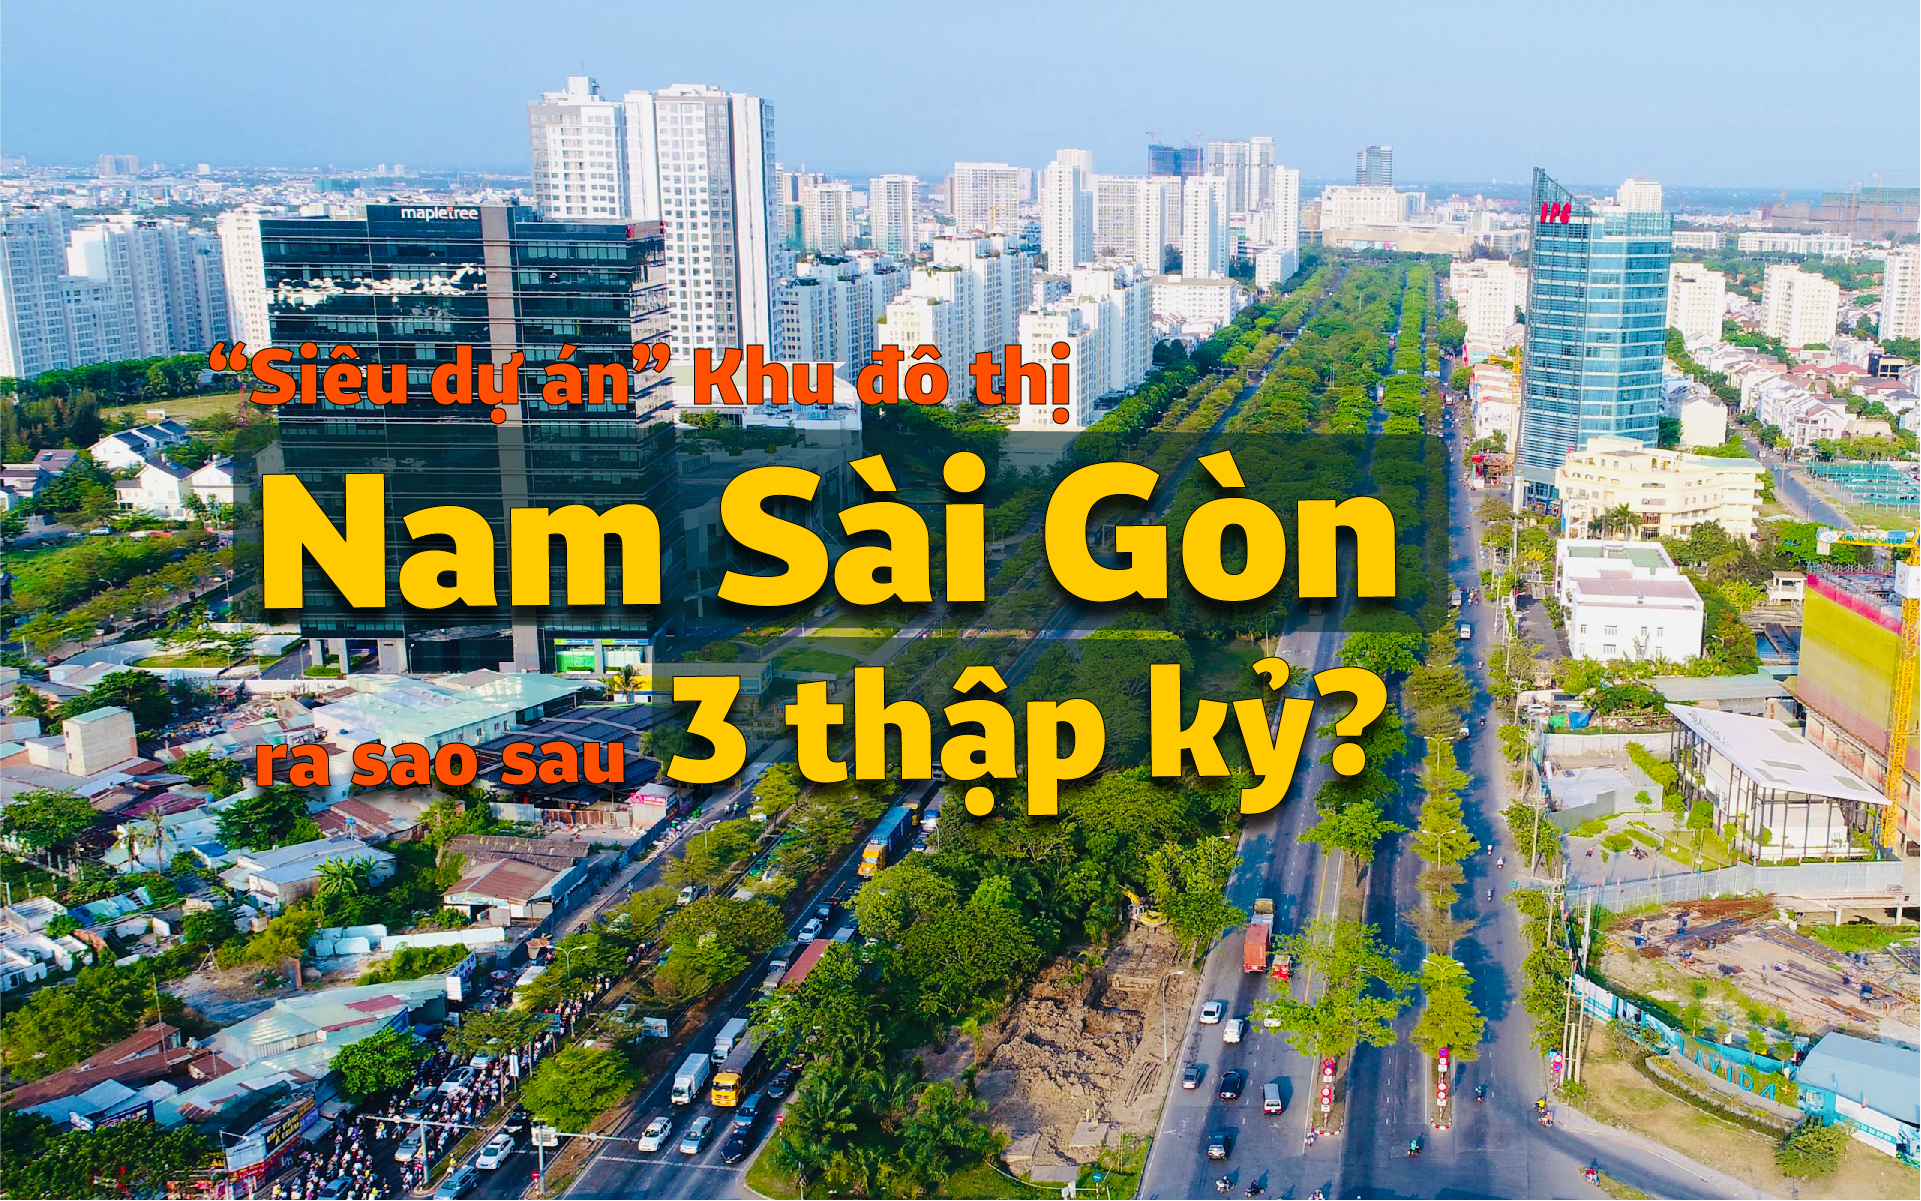 'Siêu dự án' Khu đô thị Nam Sài Gòn ra sao sau 3 thập kỷ?